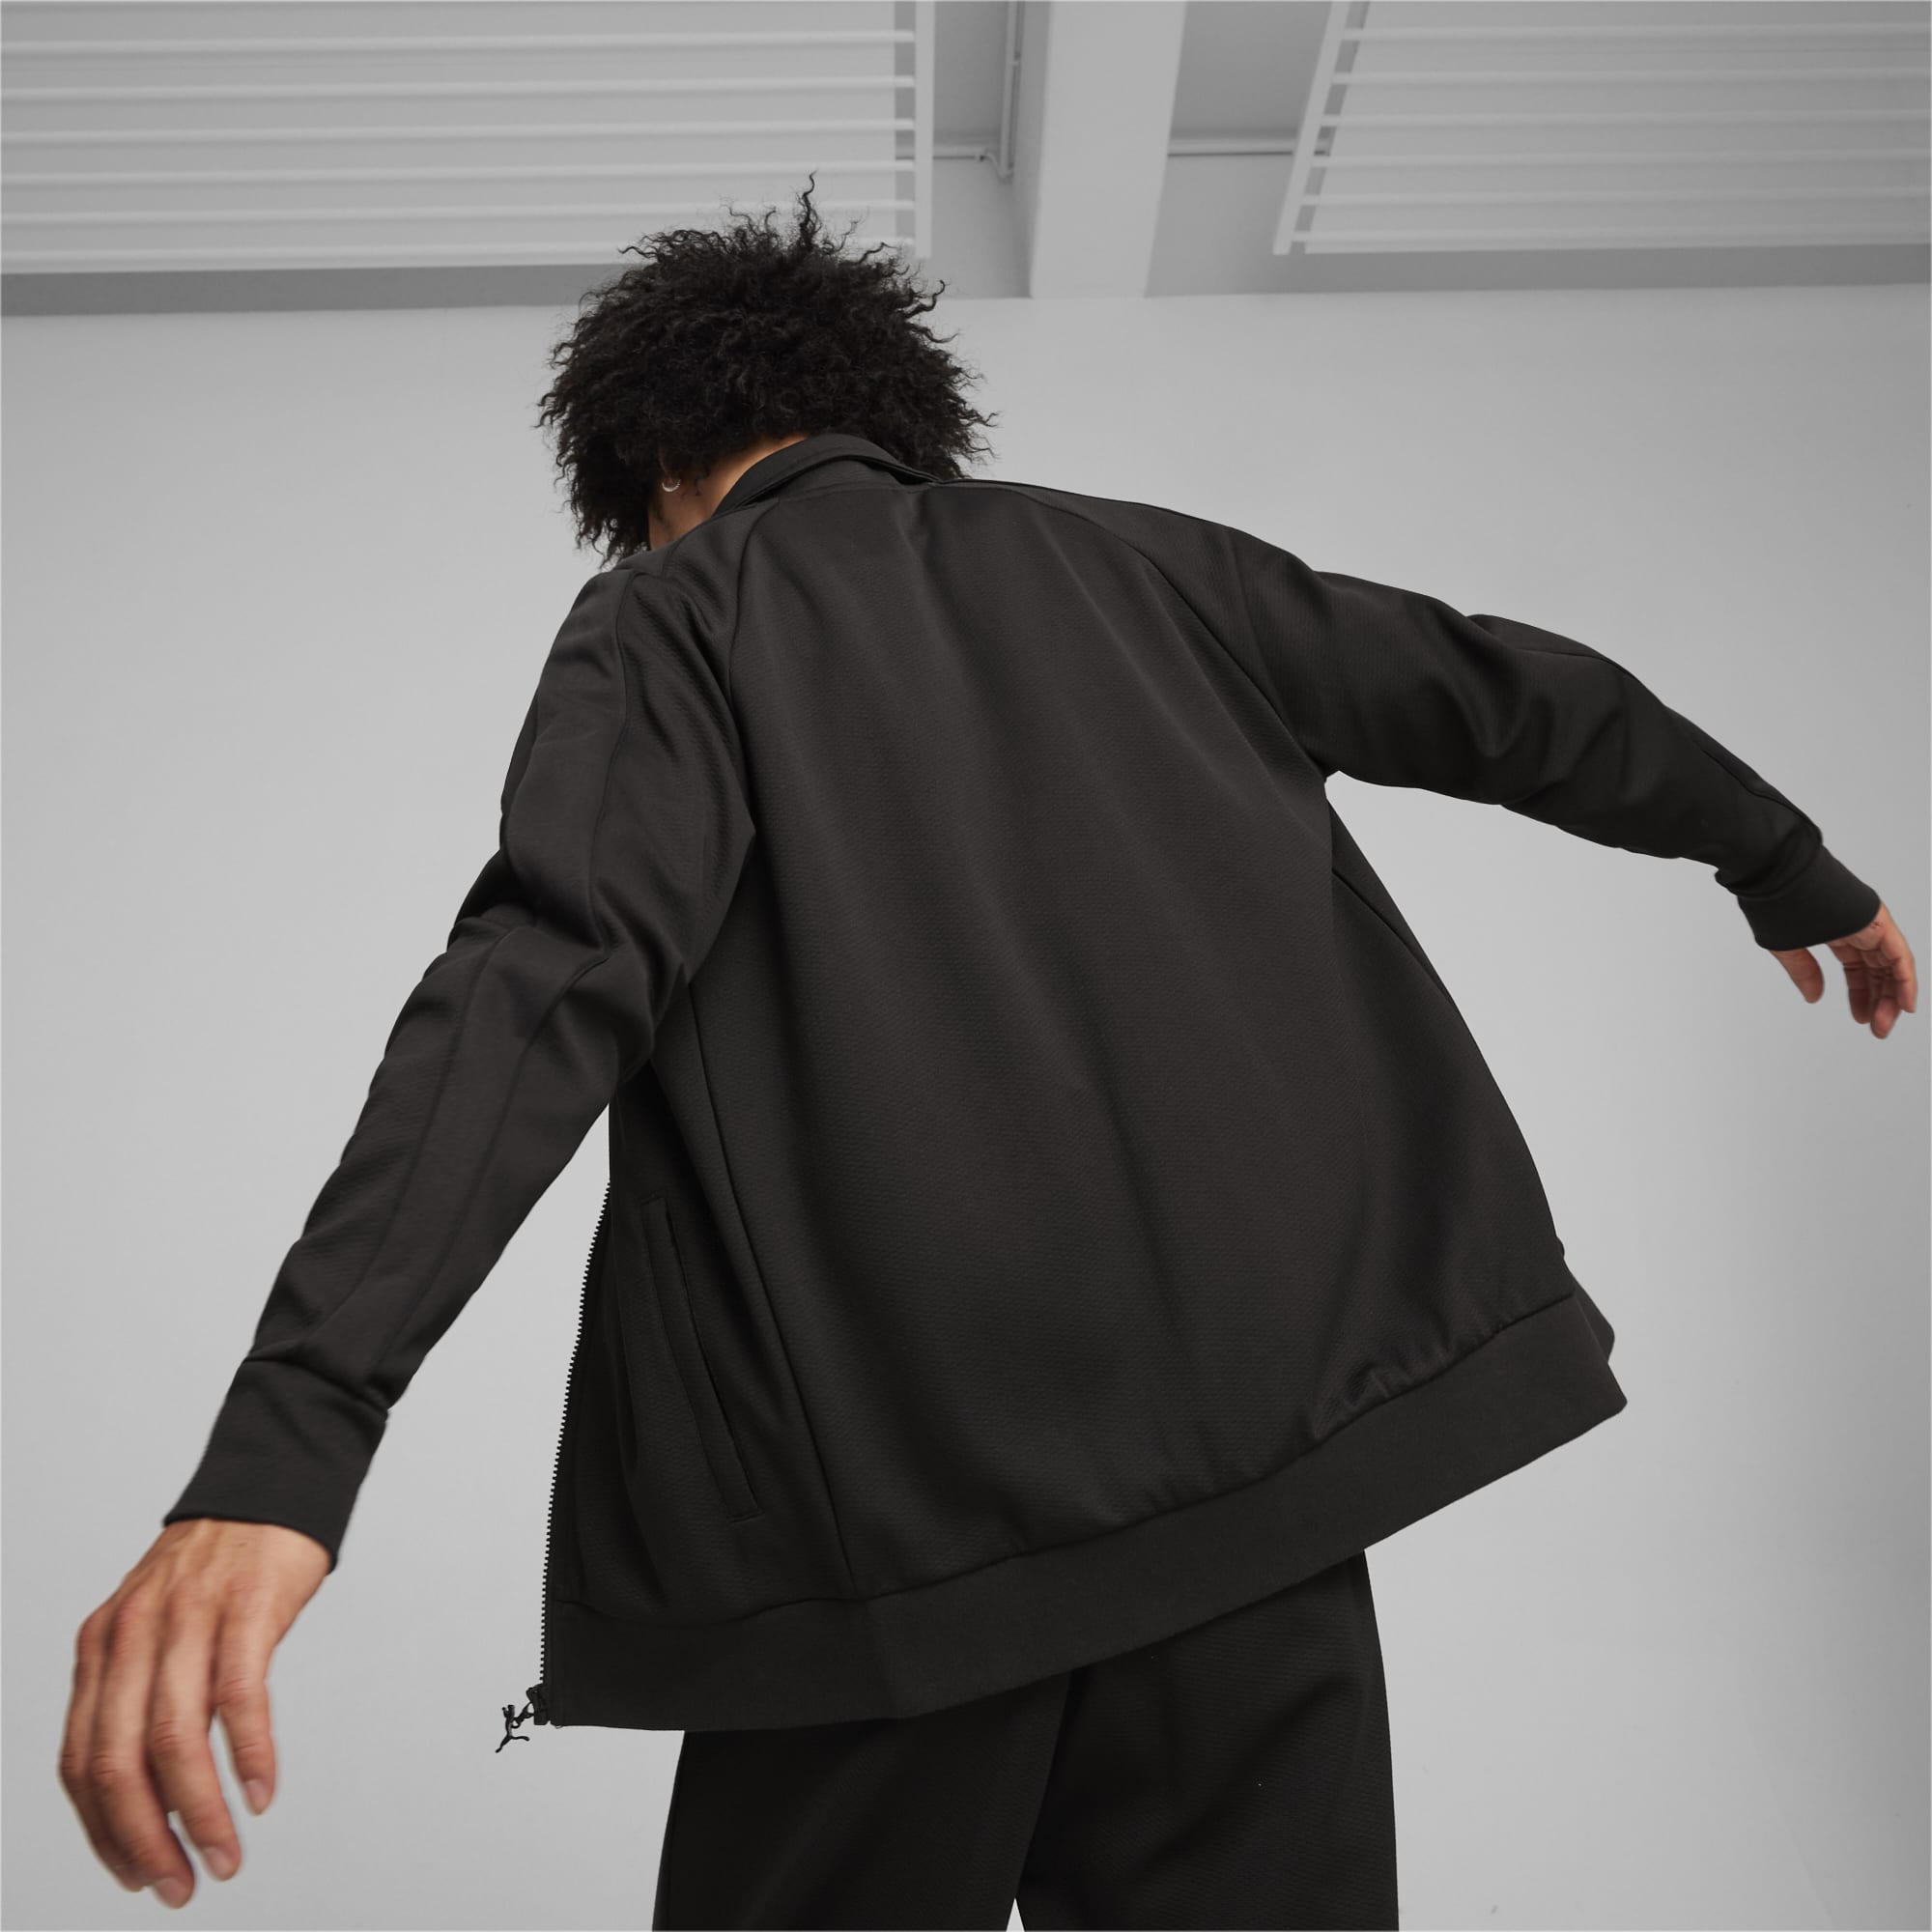 PUMA T7 Men's Track Jacket, Black, Size XS, Clothing